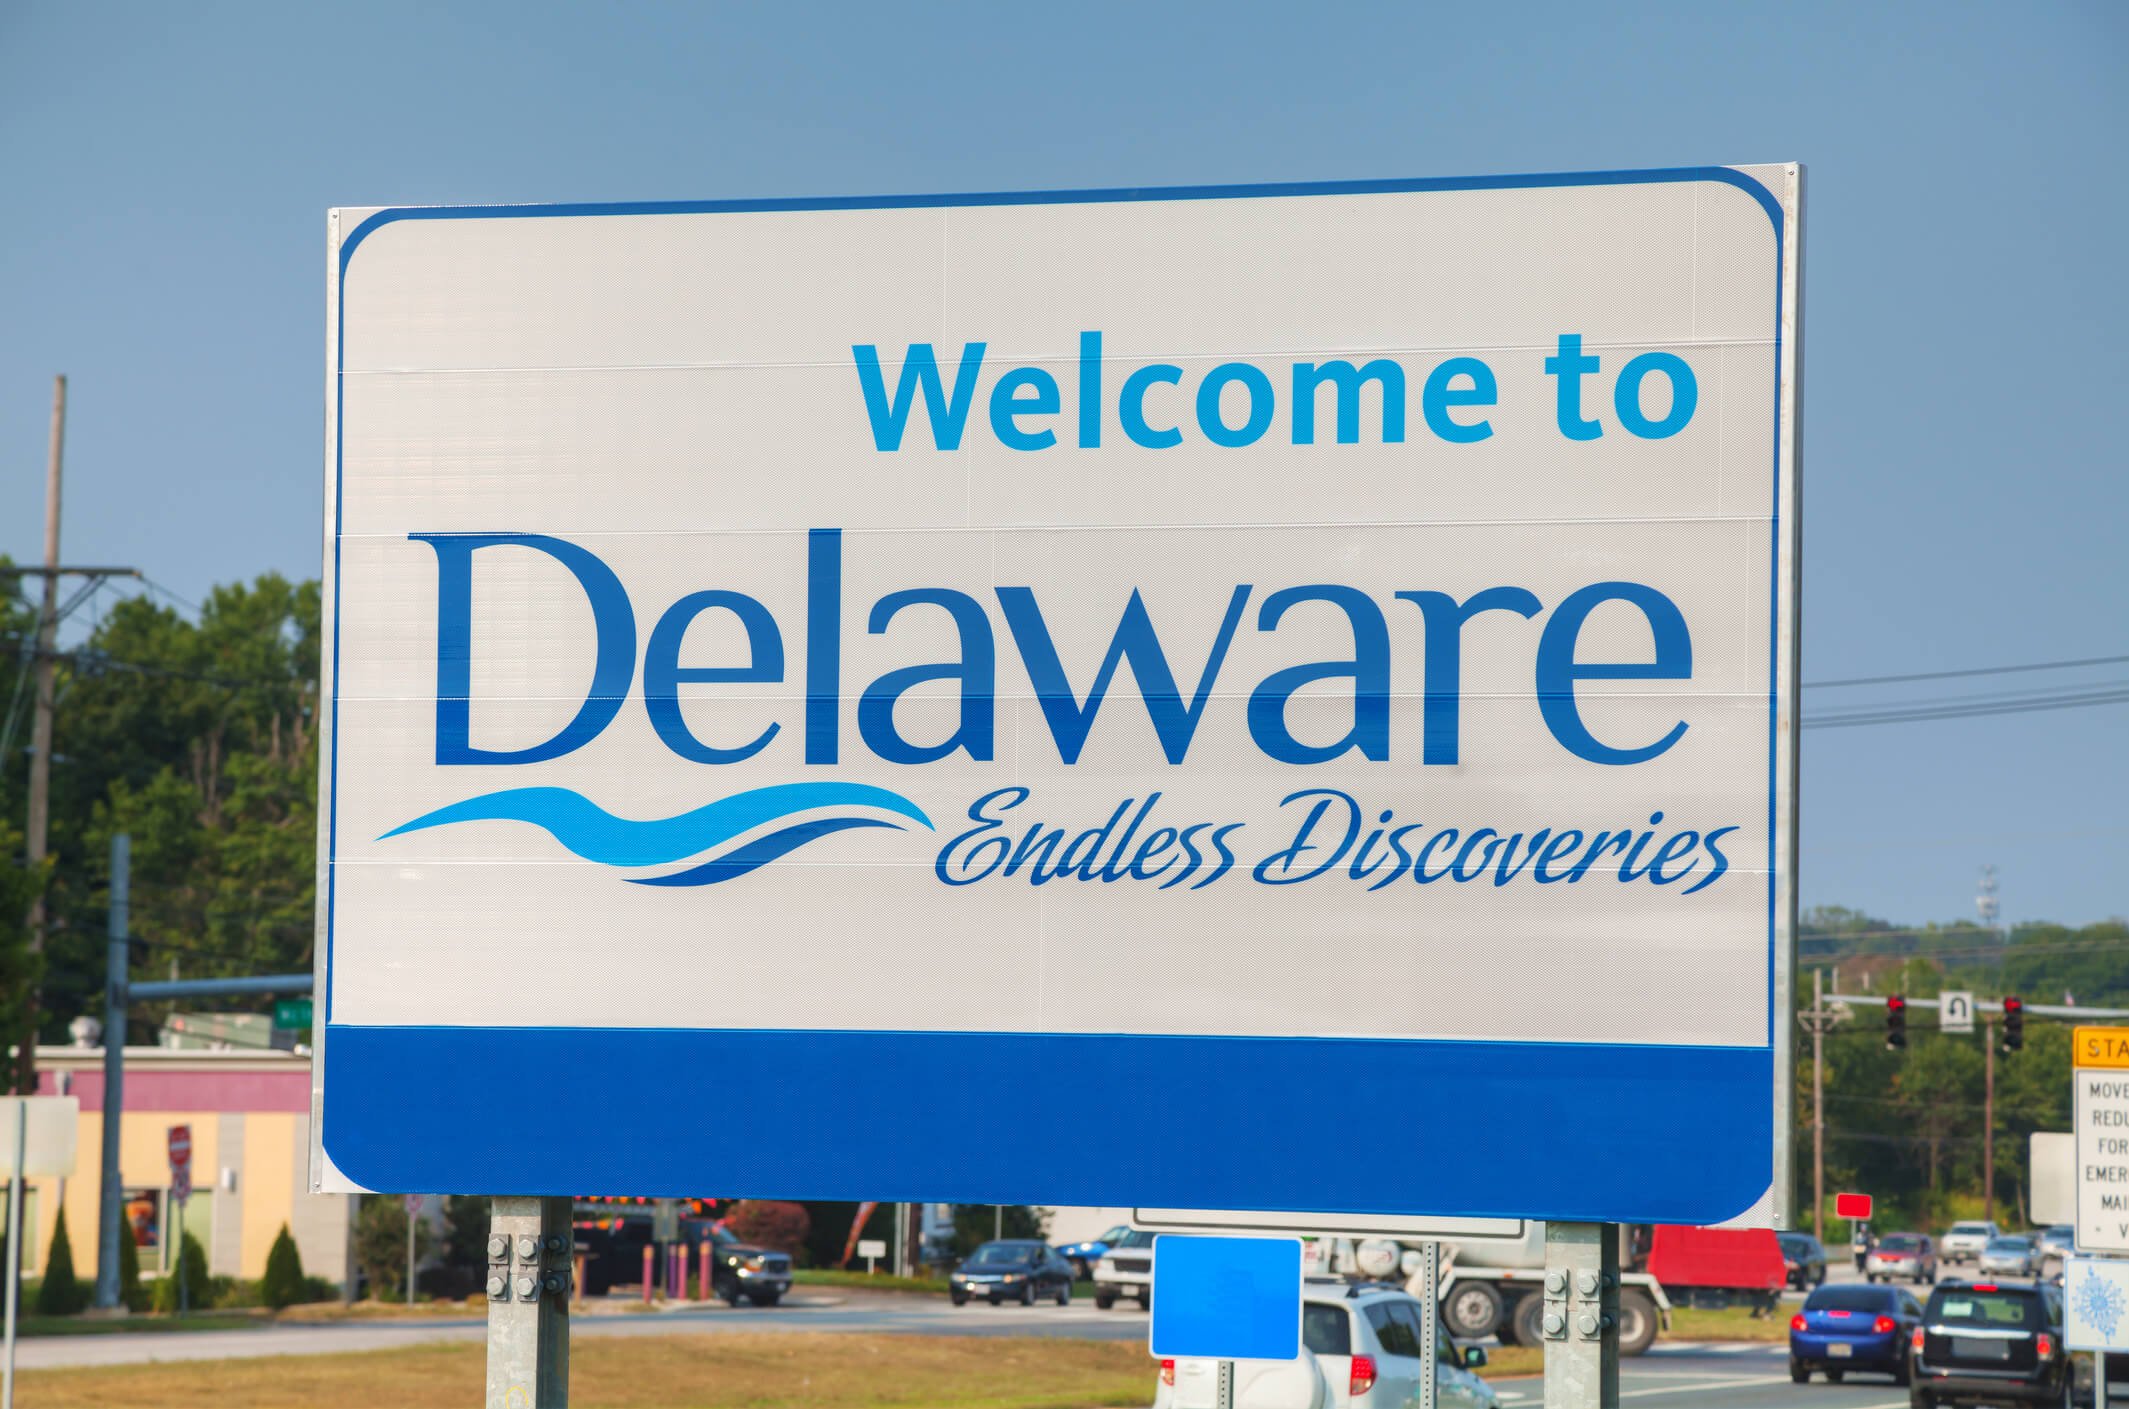 Delaware sign